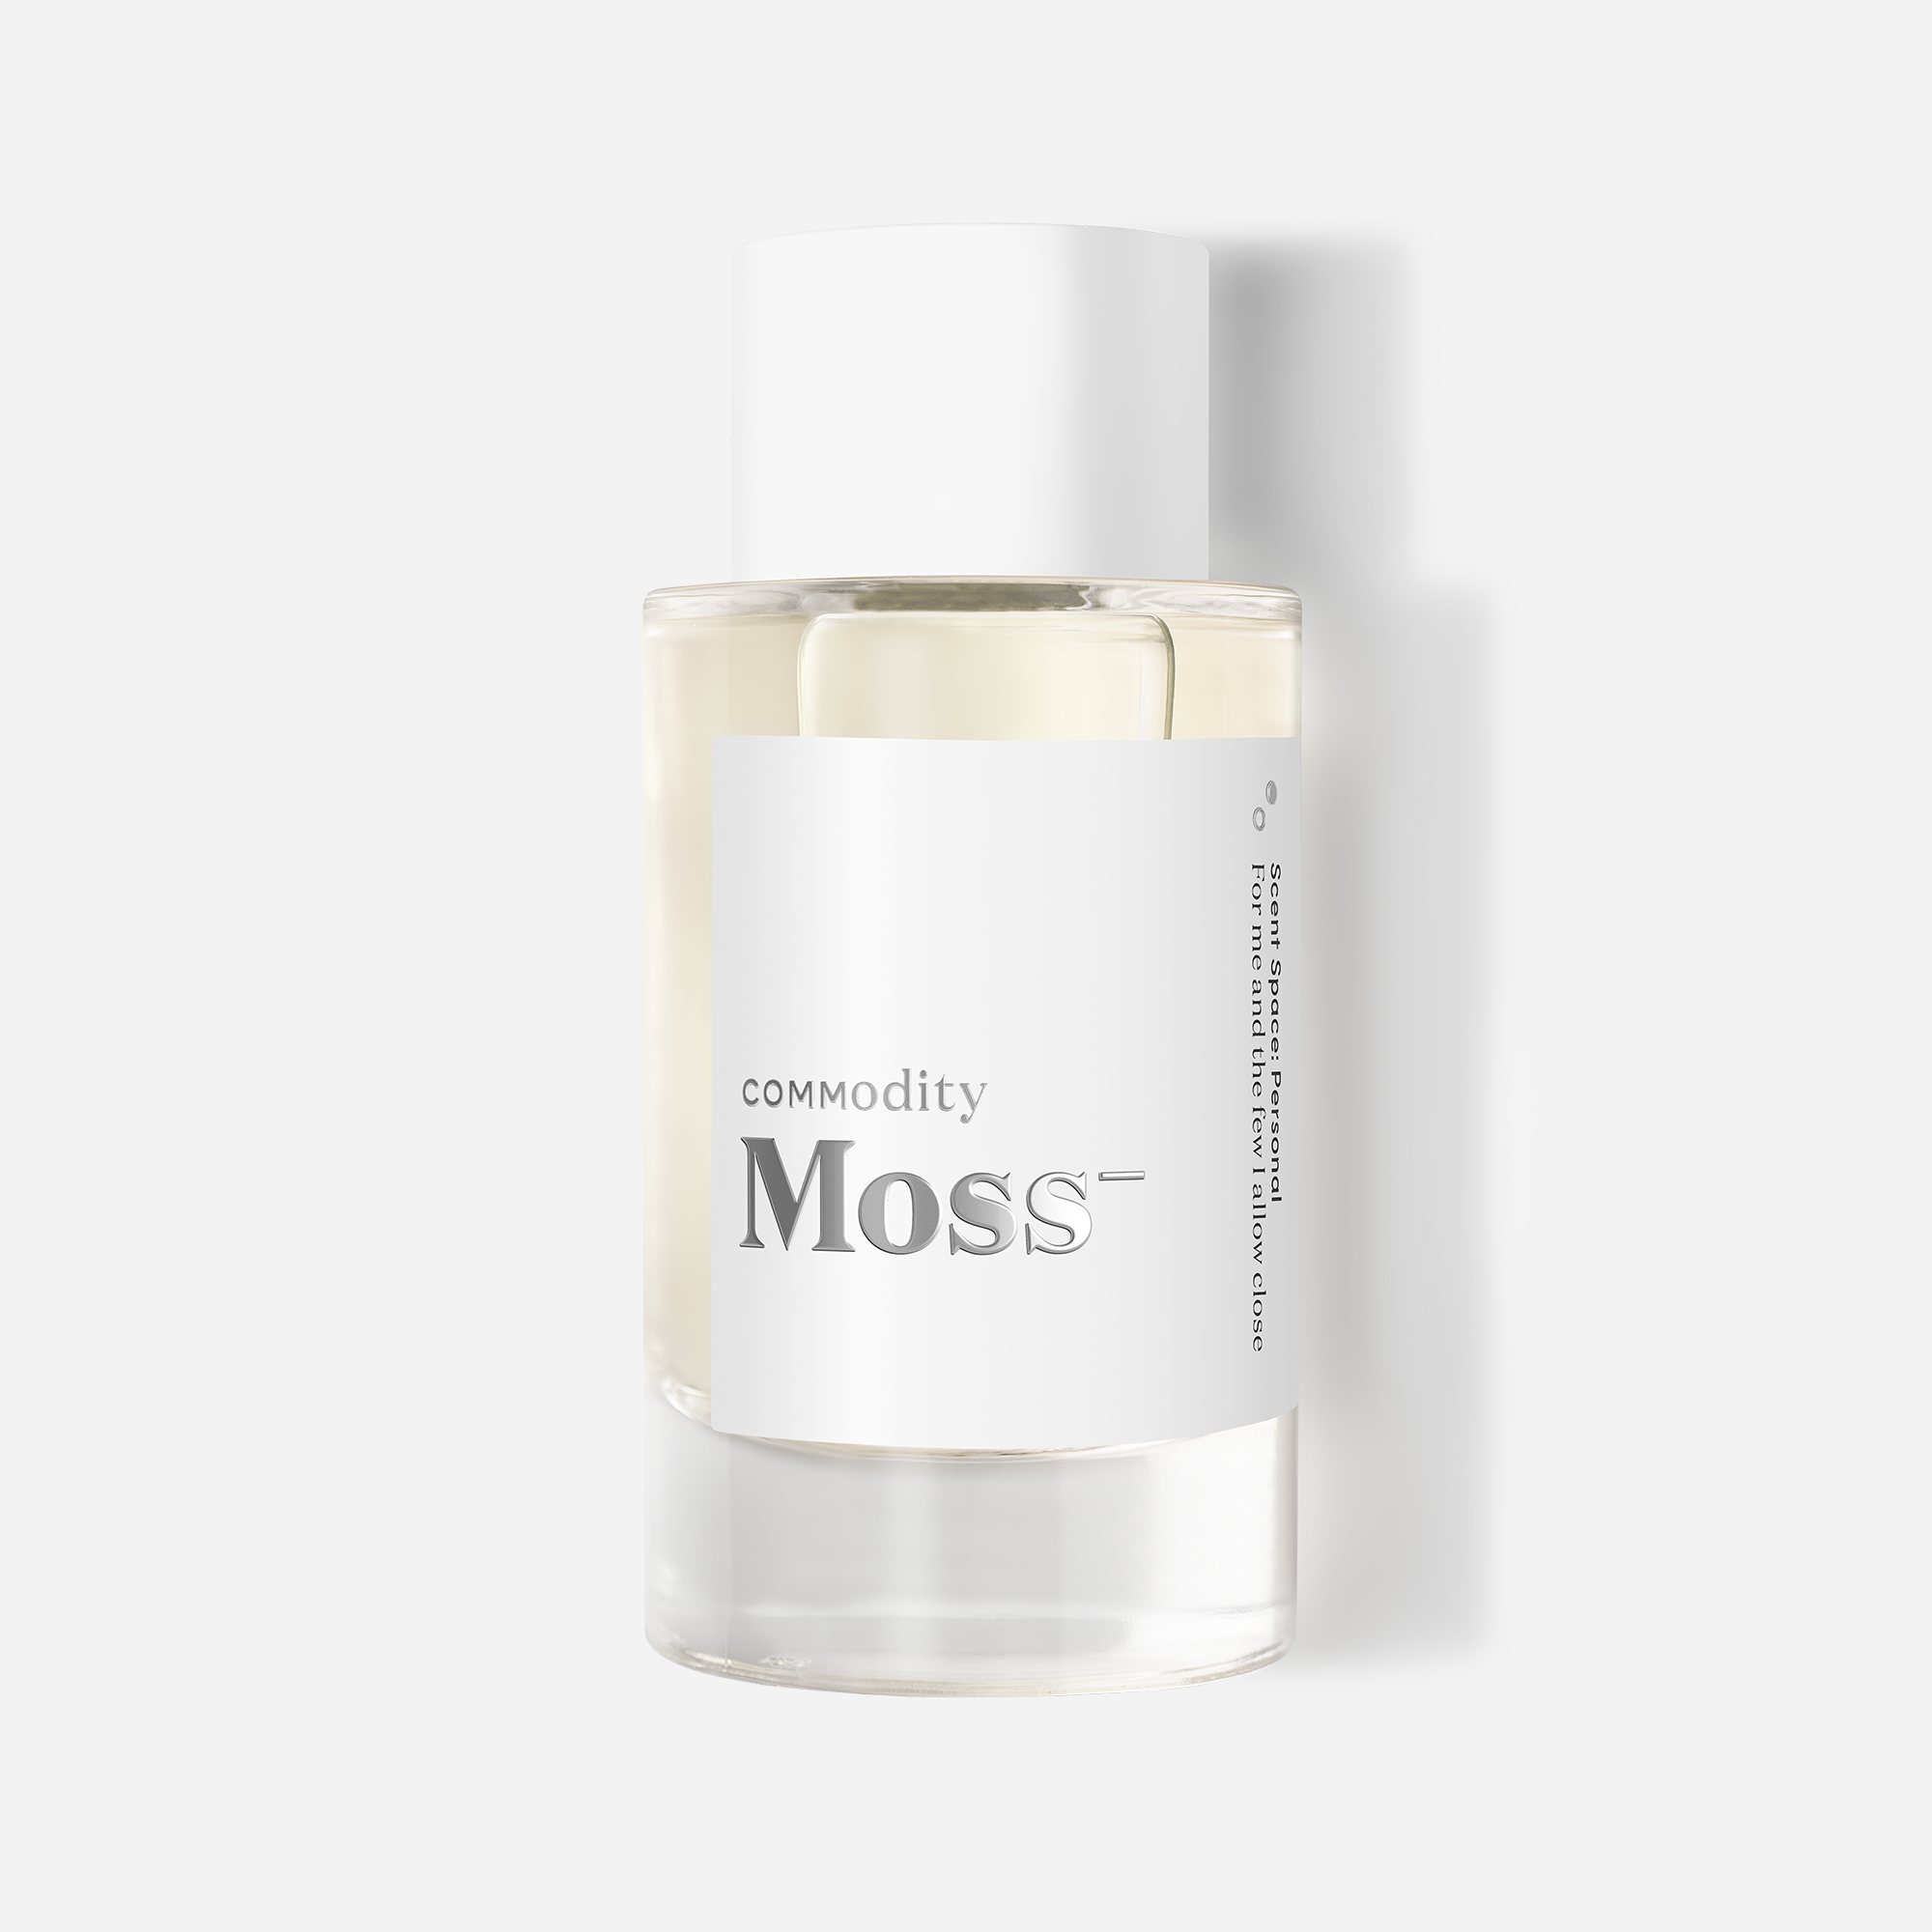 Moss-